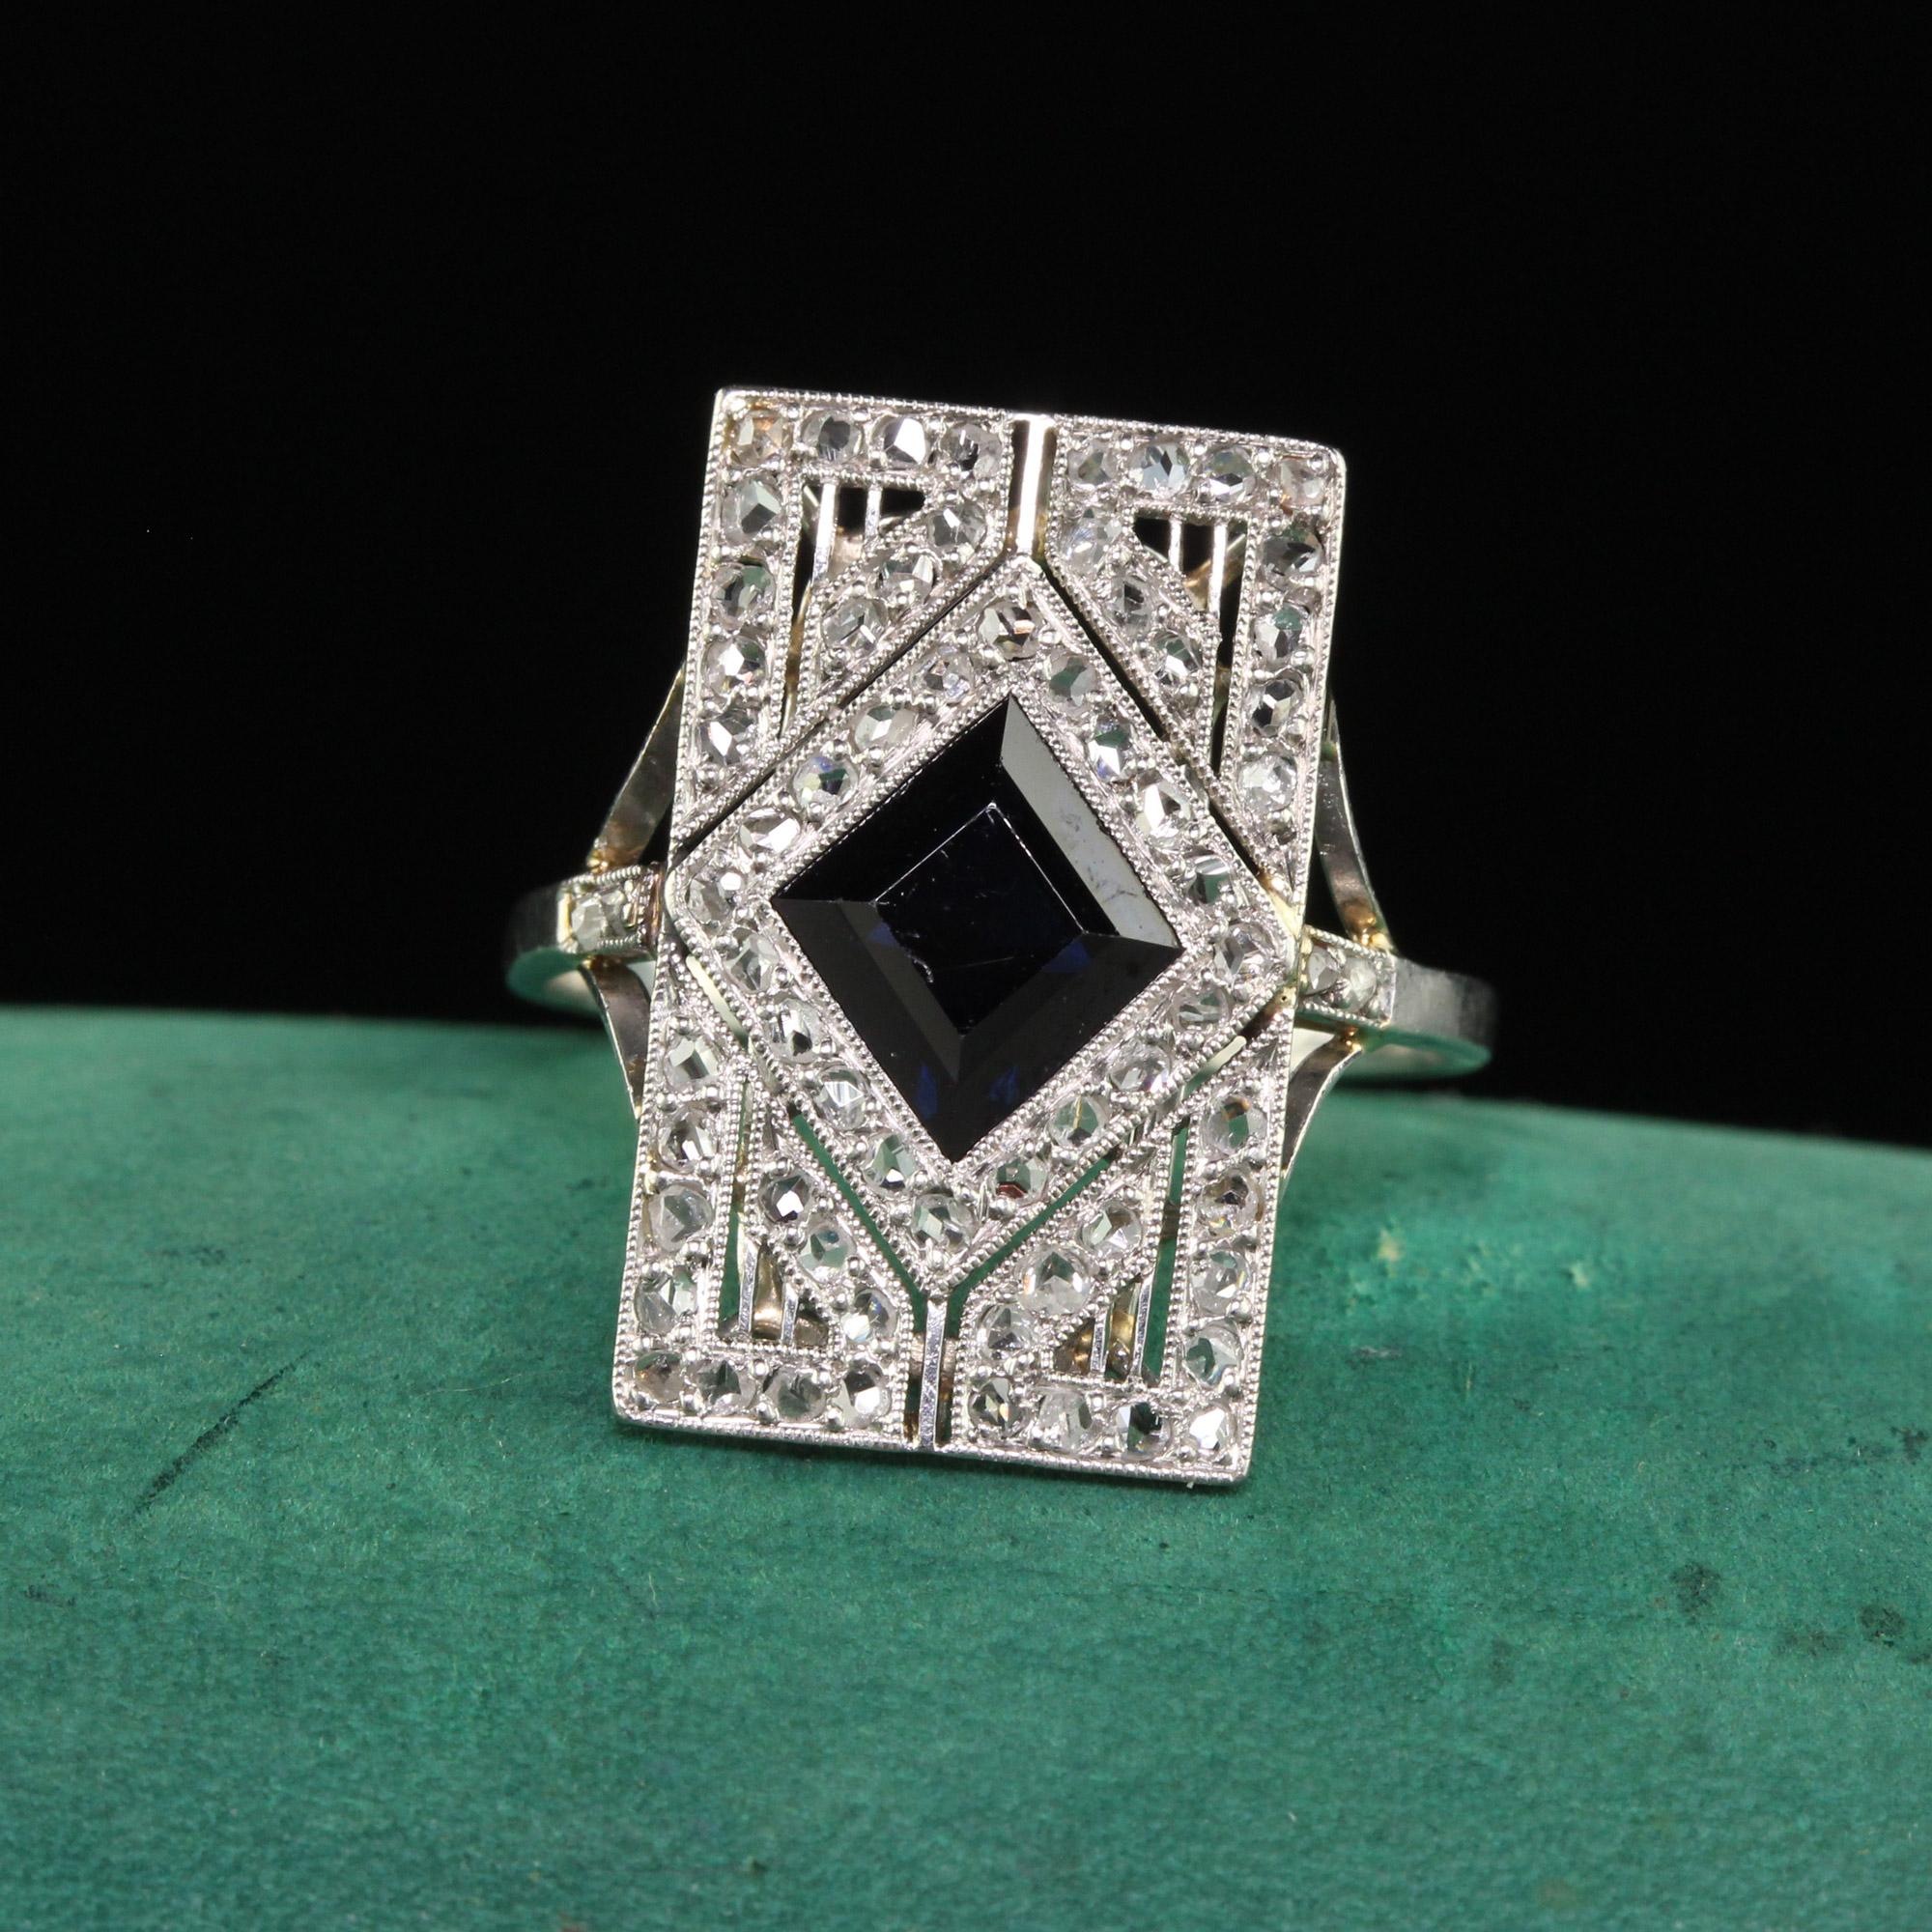 Schöne antike Art Deco Französisch Platin natürlichen Saphir und Diamant-Schild-Ring - GIA. Dieser unglaubliche französische Art-Déco-Schildring ist aus Platin gefertigt. In der Mitte befindet sich ein natürlicher blauer Saphir mit einem